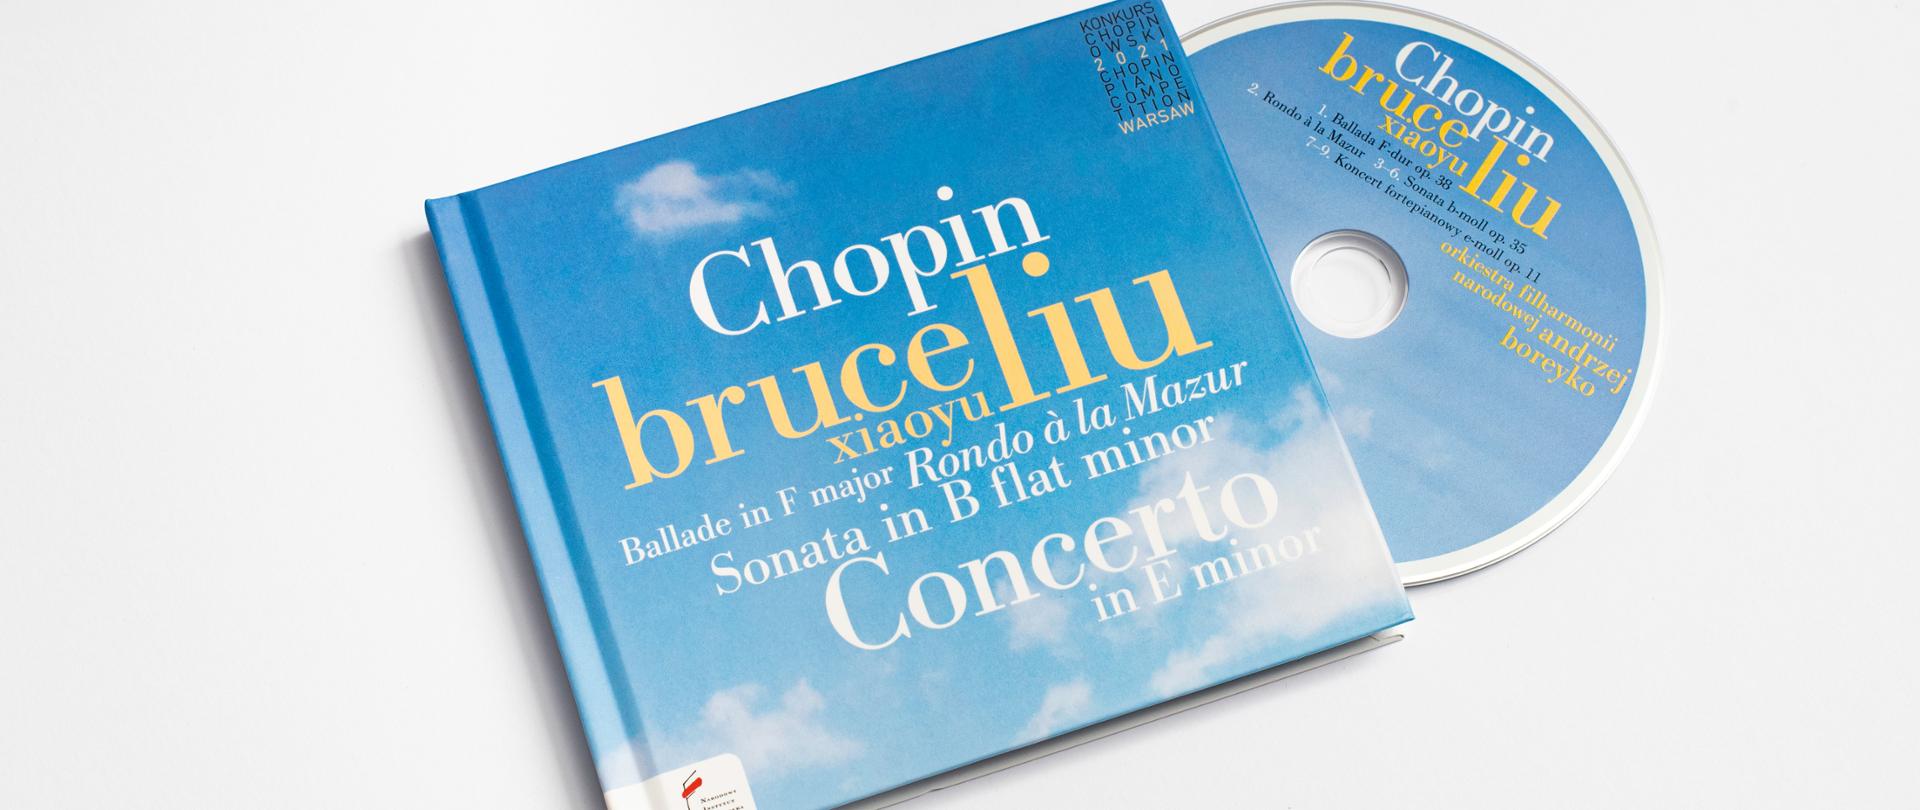 Chopin. Bruce Liu